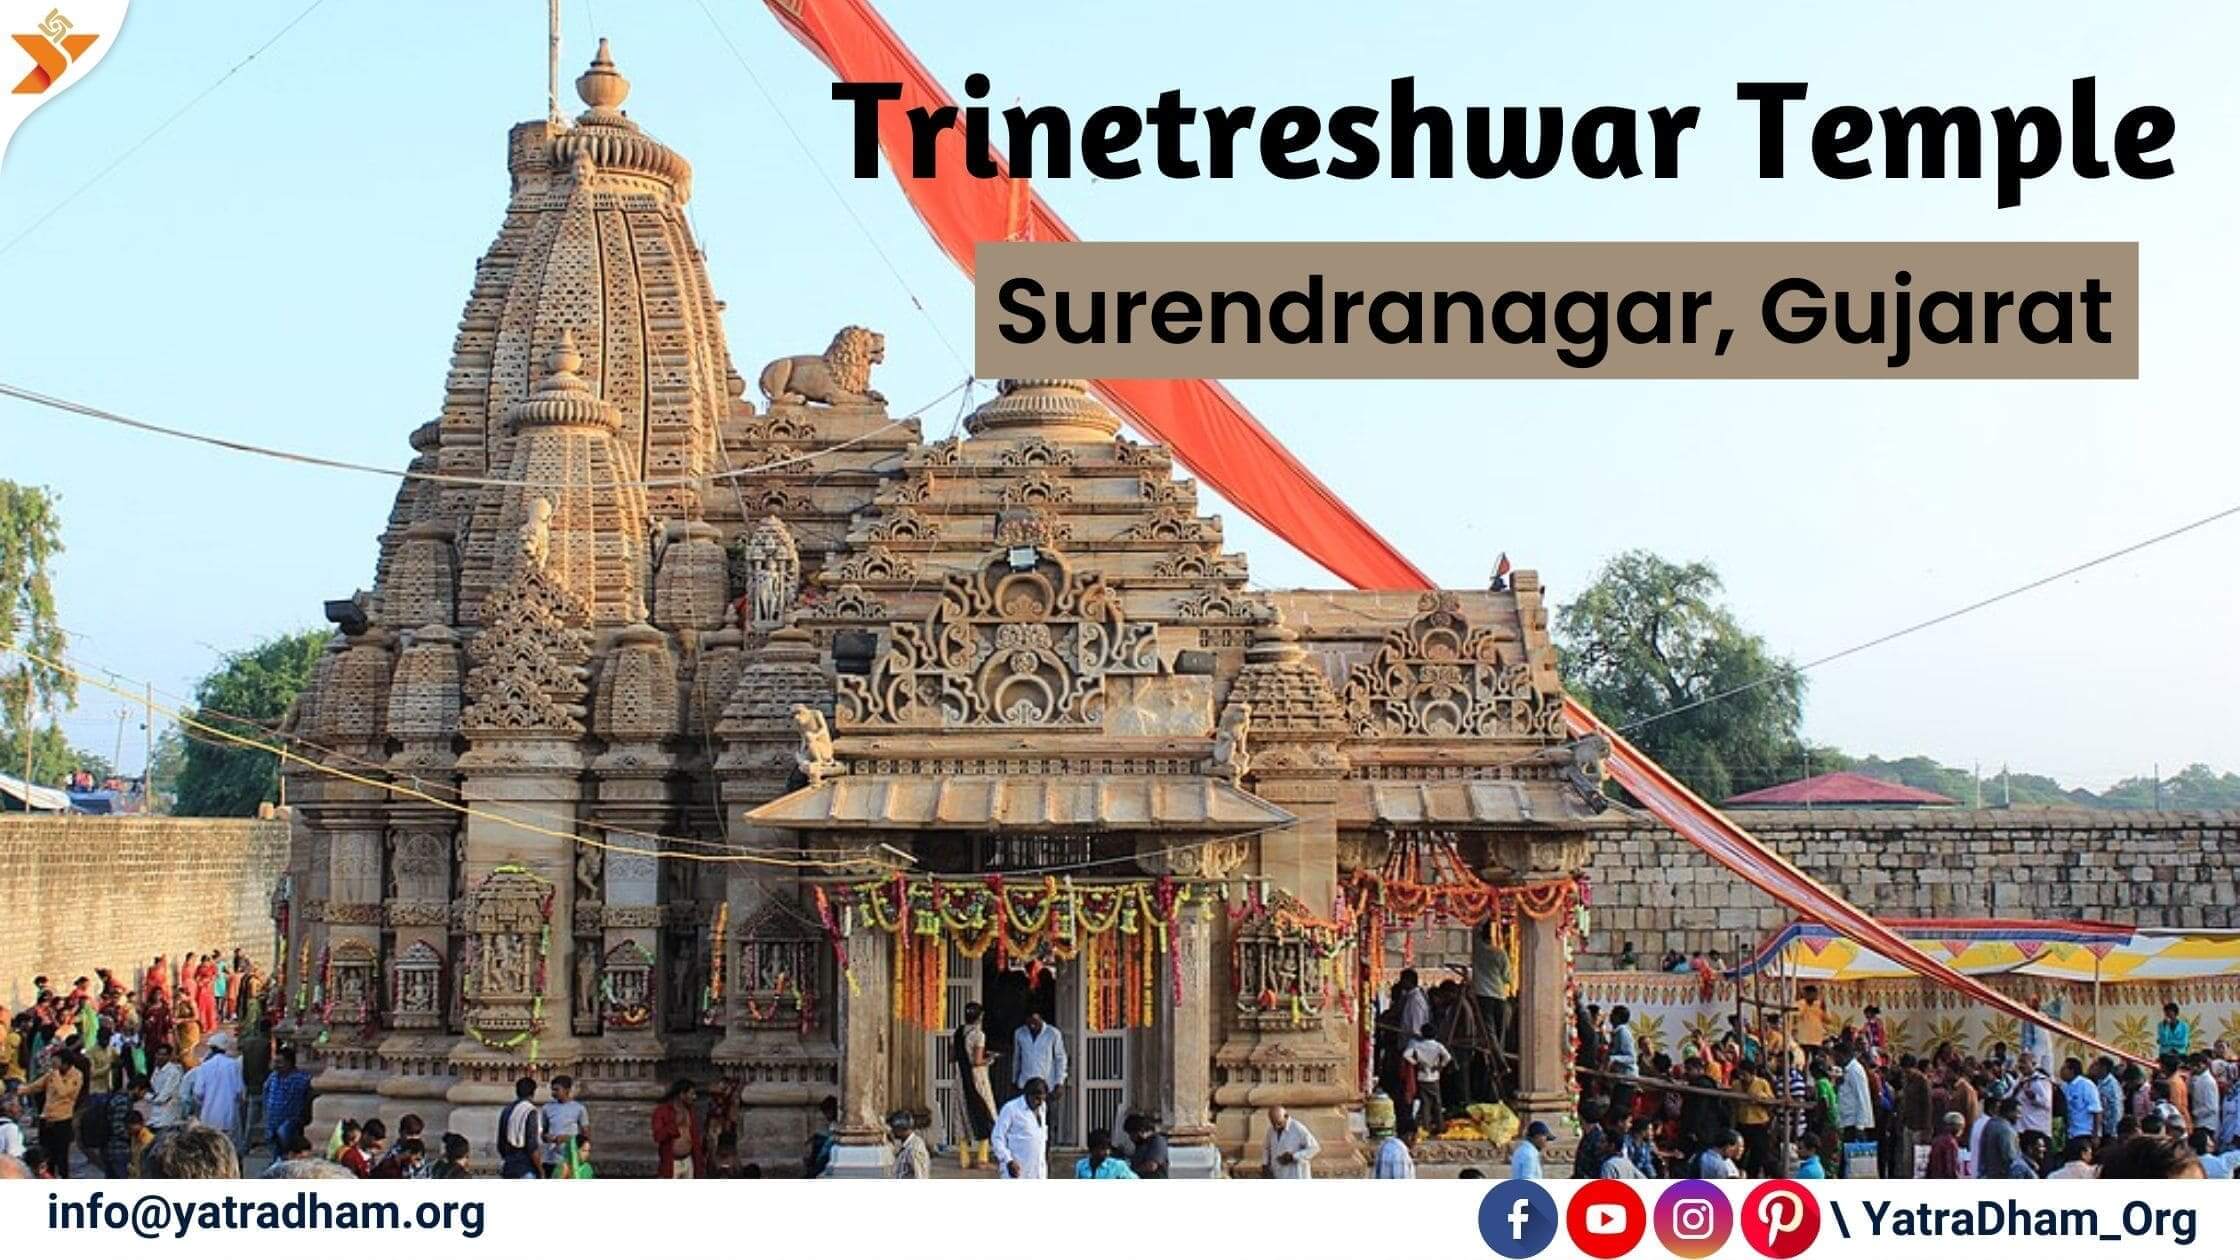 tarnetar fair at trineteshwar temple